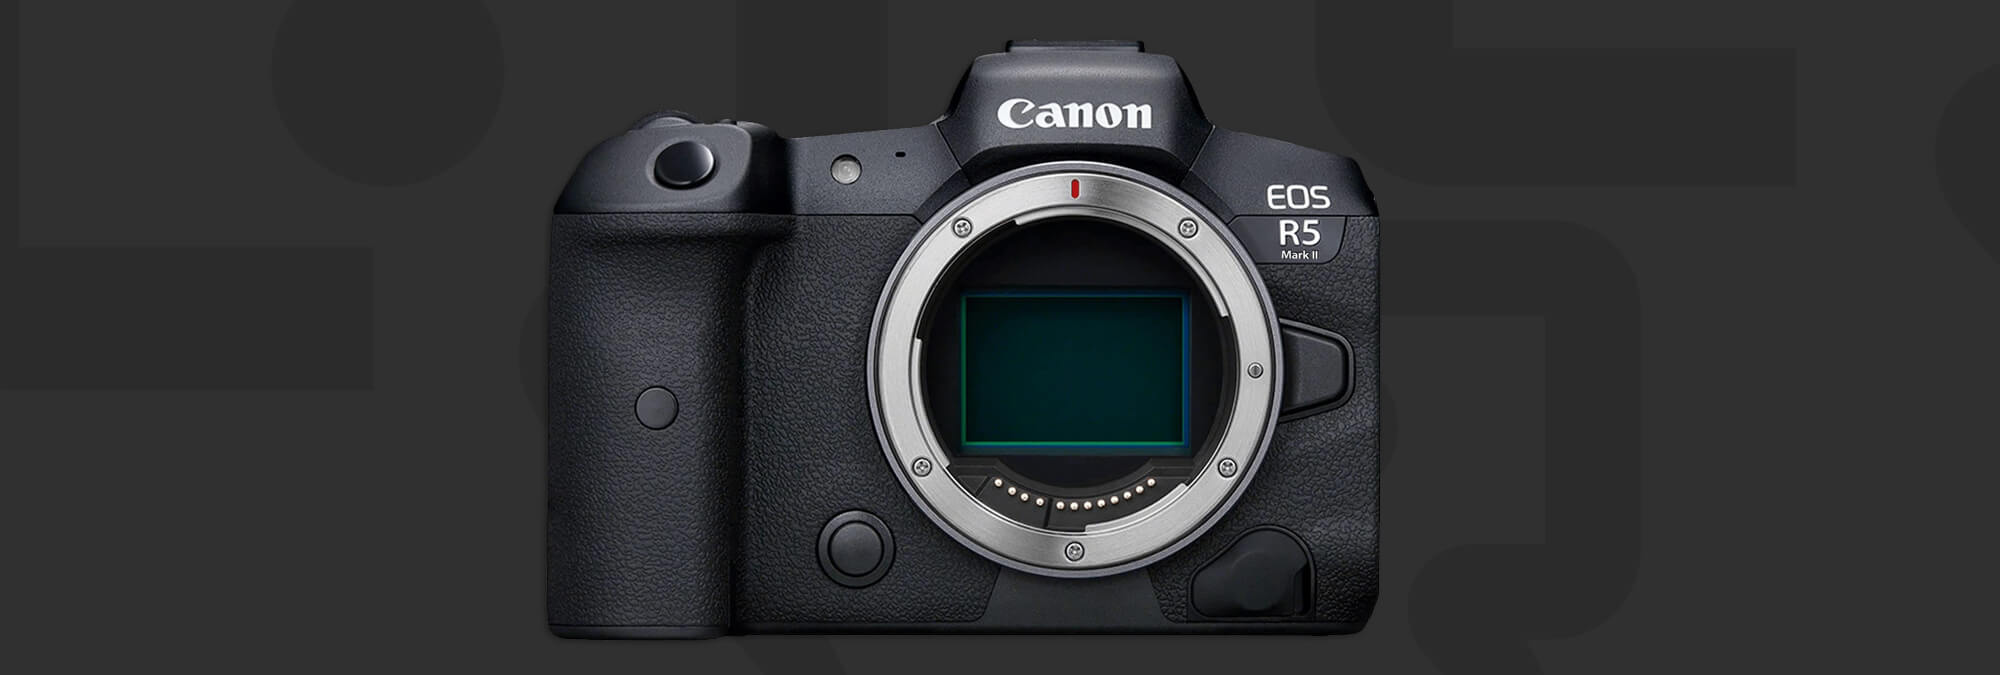 Canon EOS R5 Mark II : Ce Que Nous Savons Et Ce Que Cela Pourrait Signifier  Pour